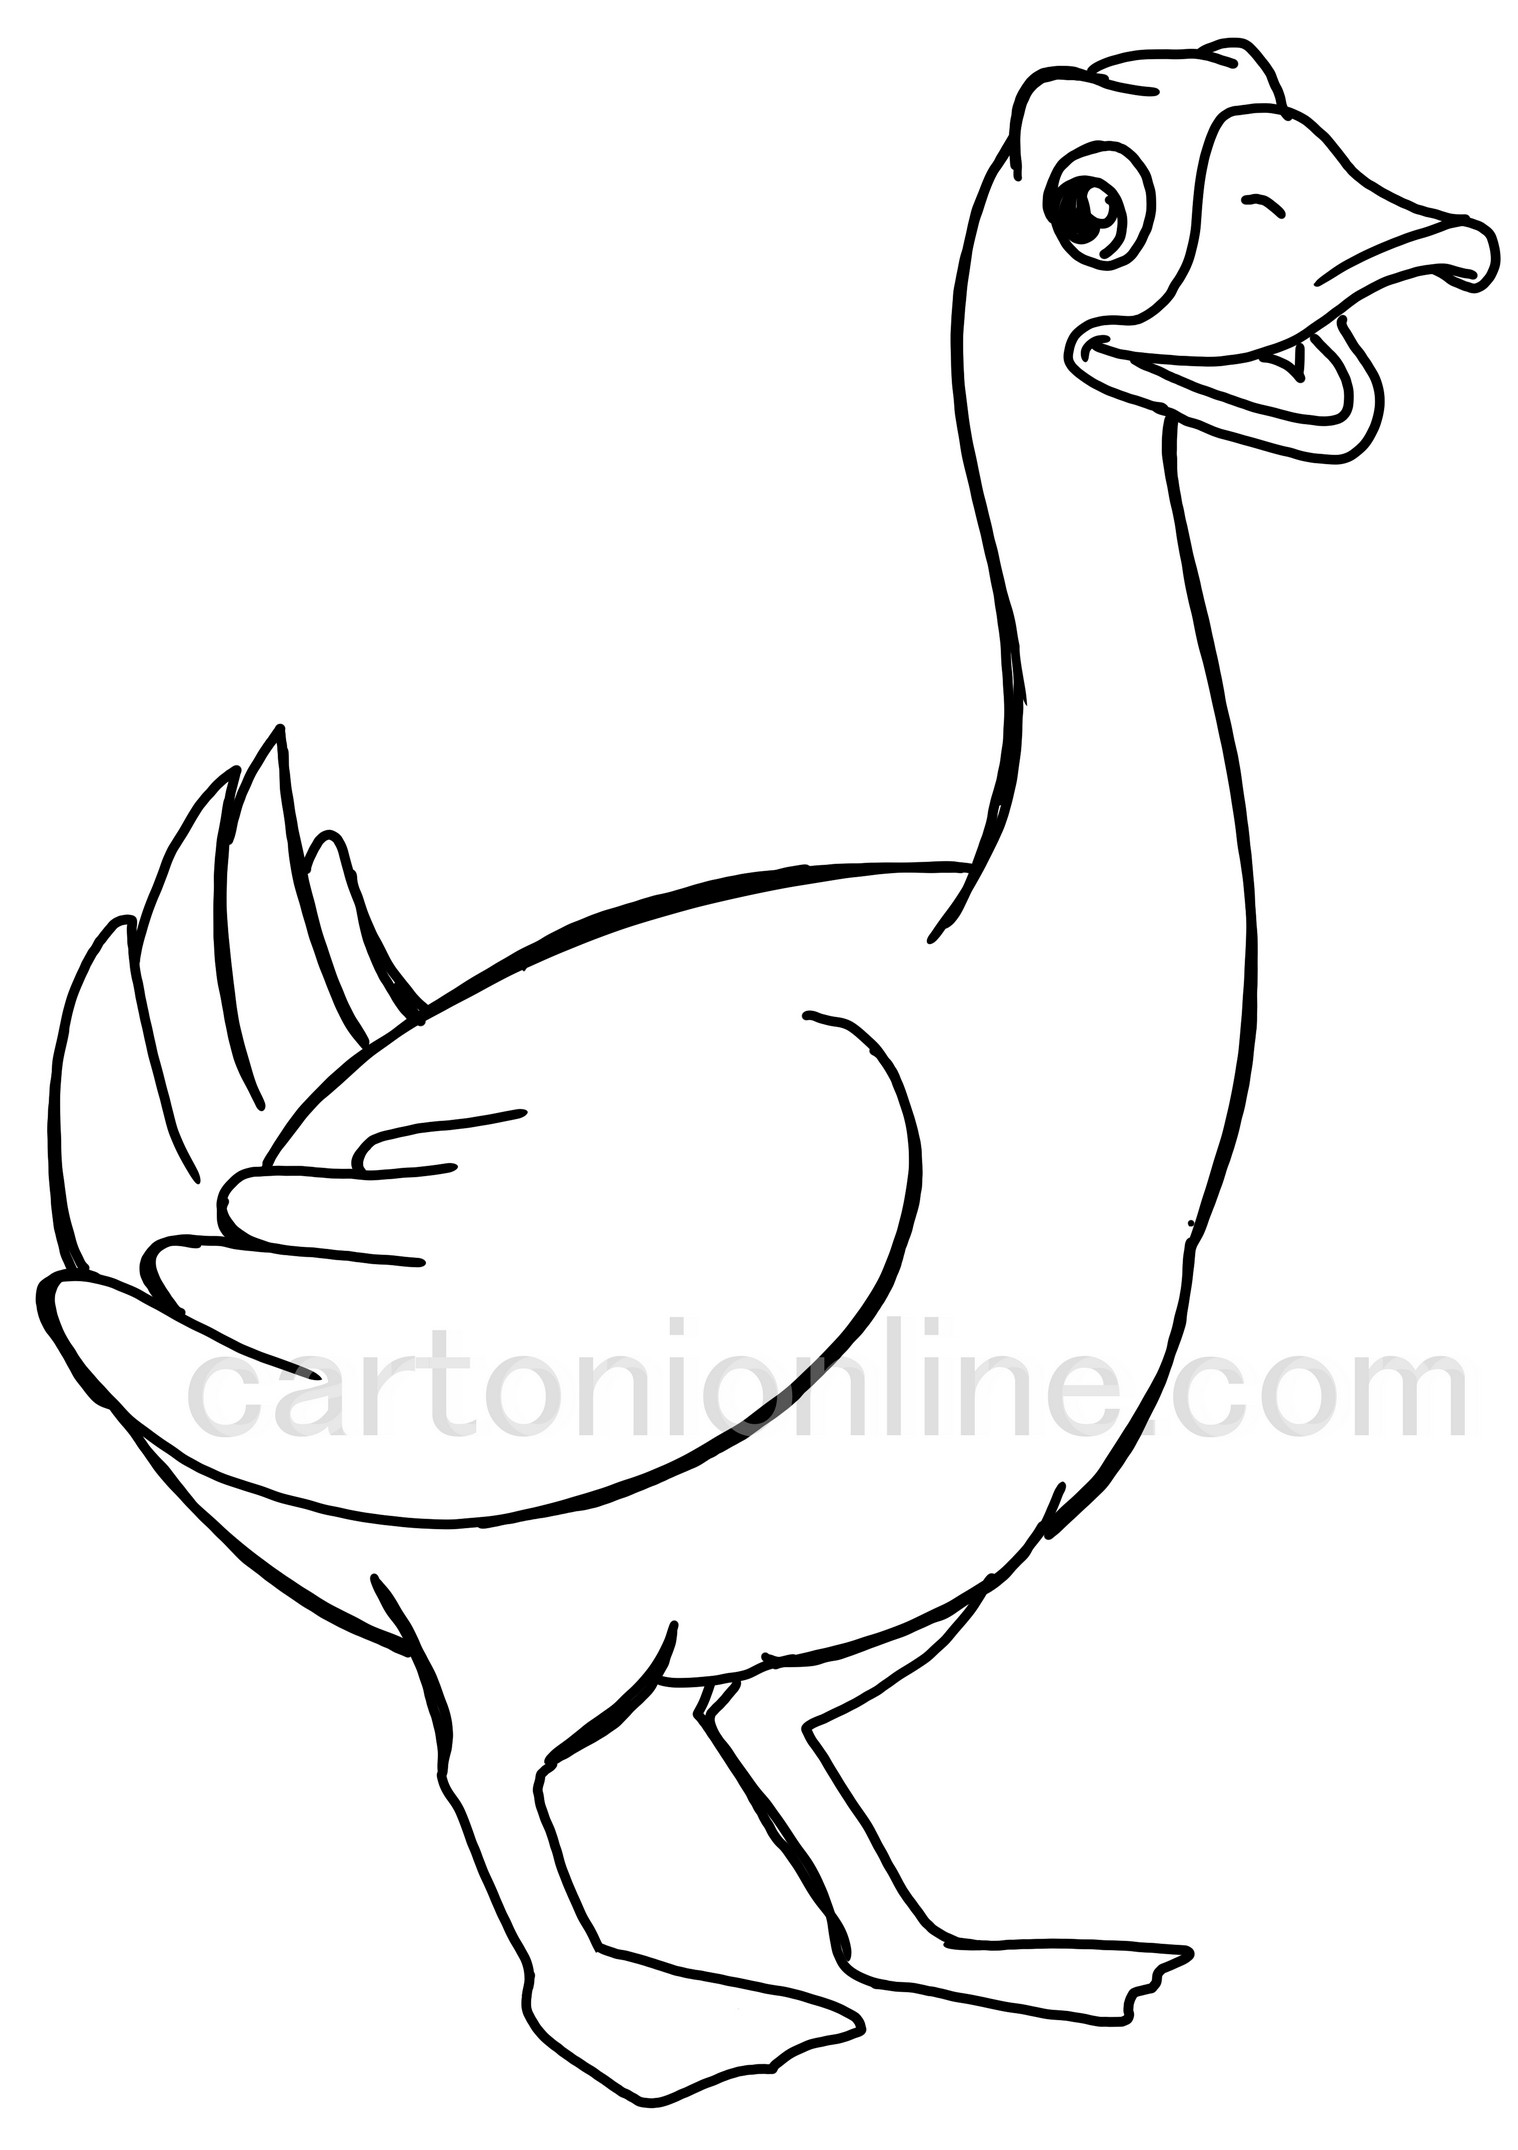 Goose cartoon coloring page